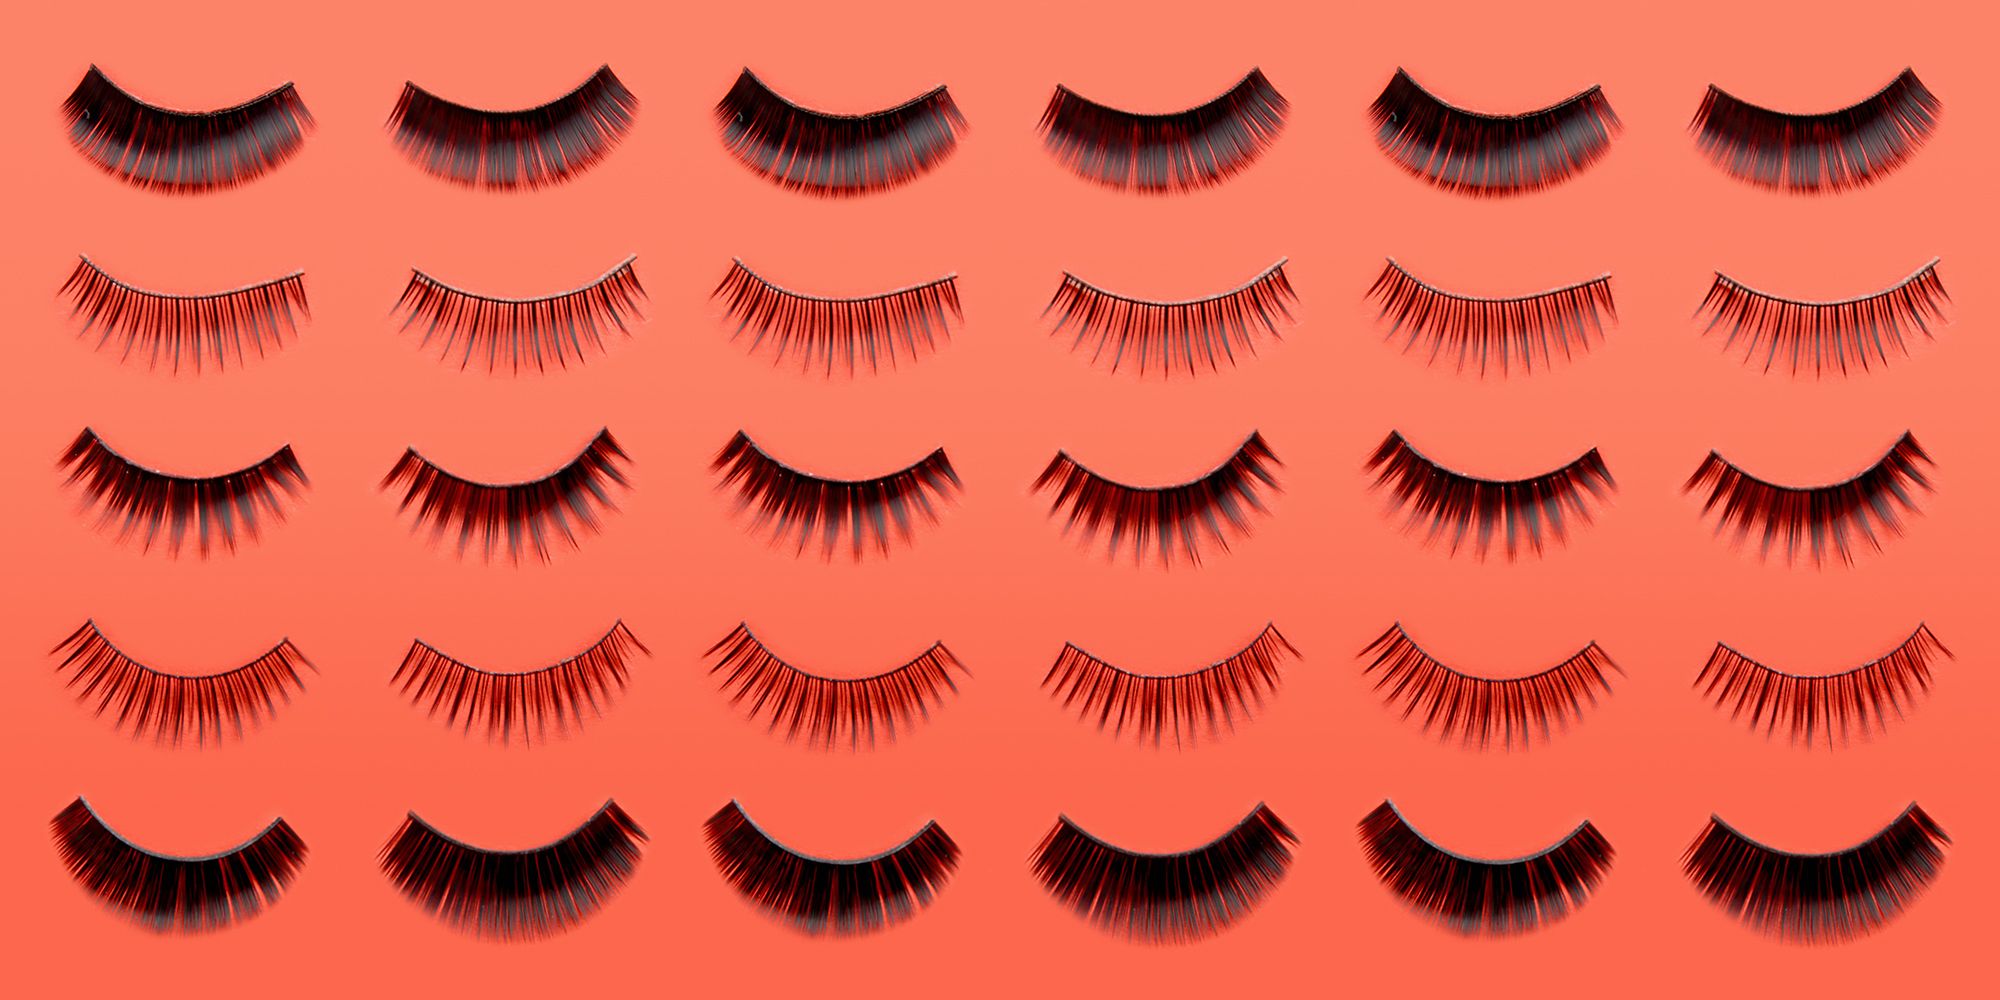 12 Best False Eyelashes to Buy in 2023 - Fake Eyelashes That Look Real